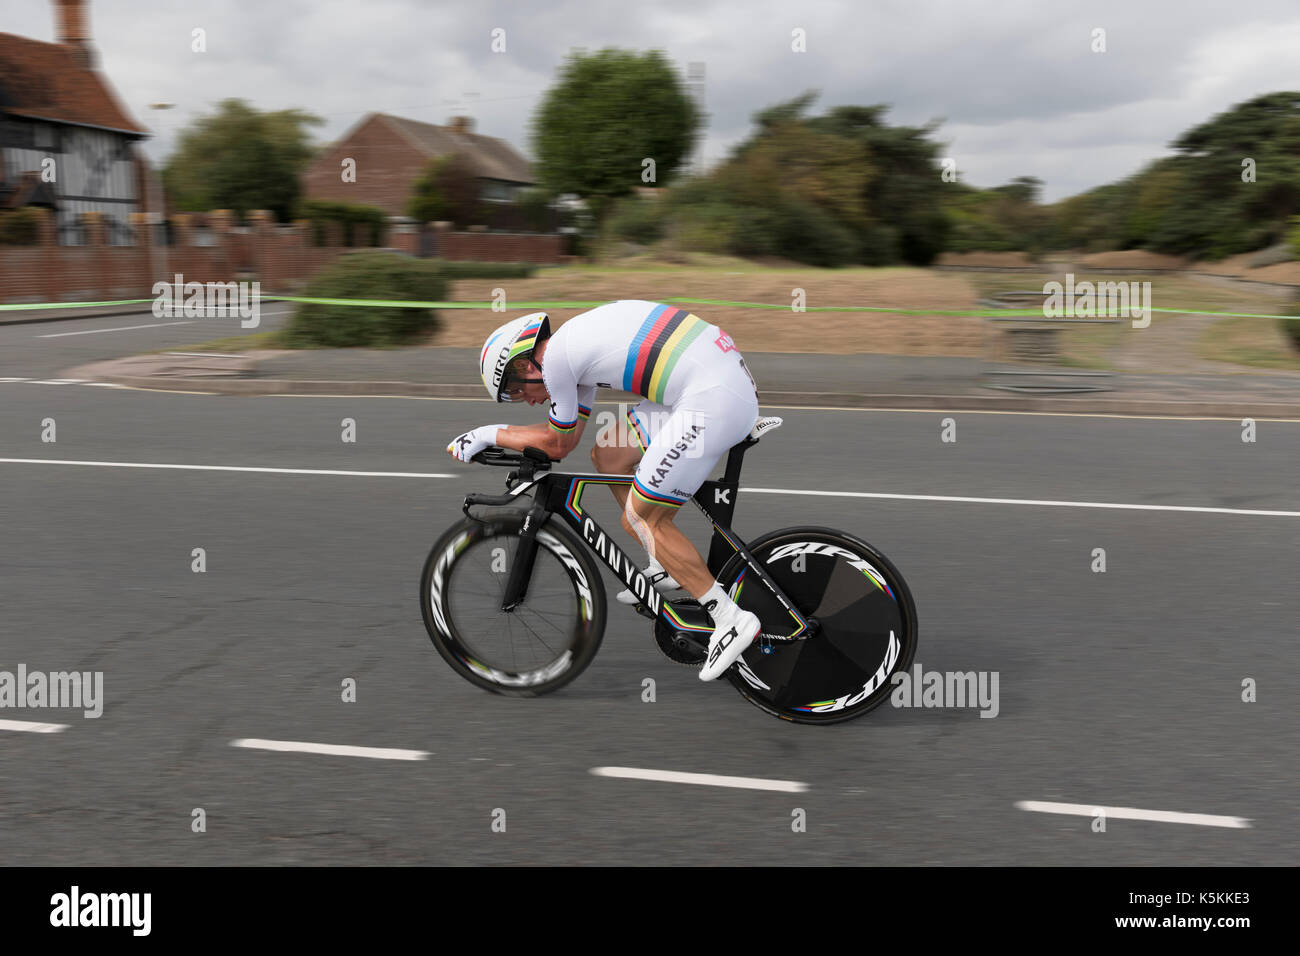 Tony Martin, Team Katusha, Tour of Britain cycle race stage 5 timetrial at Clacton on sea, UK Stock Photo